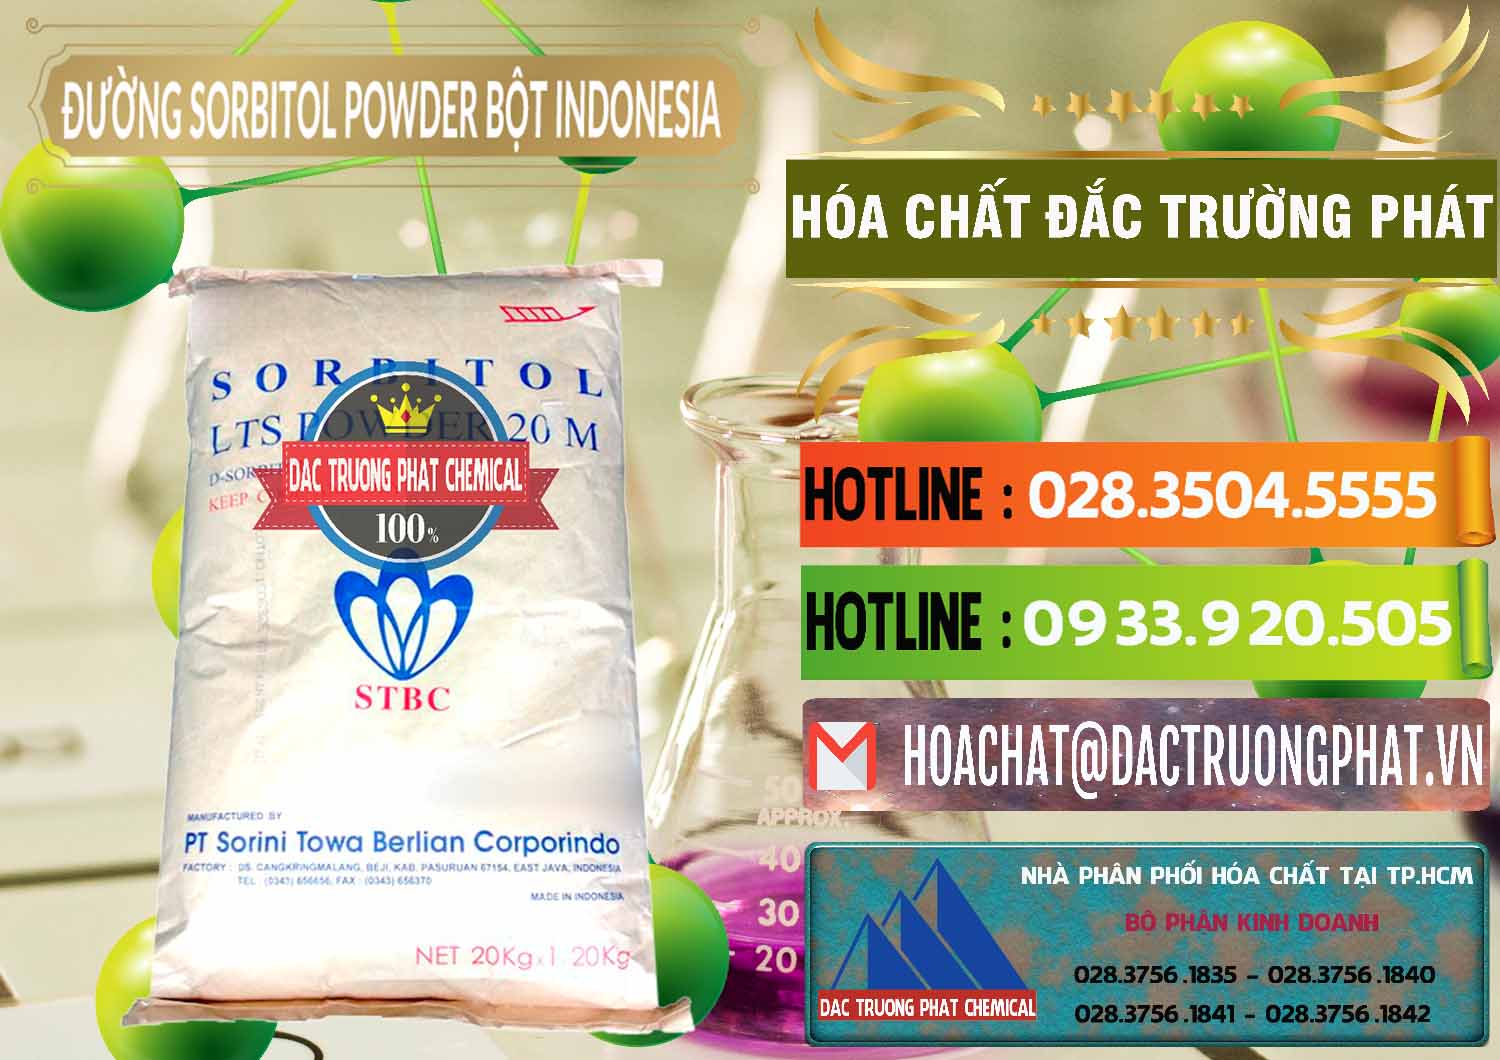 Đơn vị chuyên bán và cung cấp D-Sorbitol Bột - C6H14O6 Food Grade Indonesia - 0320 - Đơn vị chuyên kinh doanh và cung cấp hóa chất tại TP.HCM - cungcaphoachat.com.vn